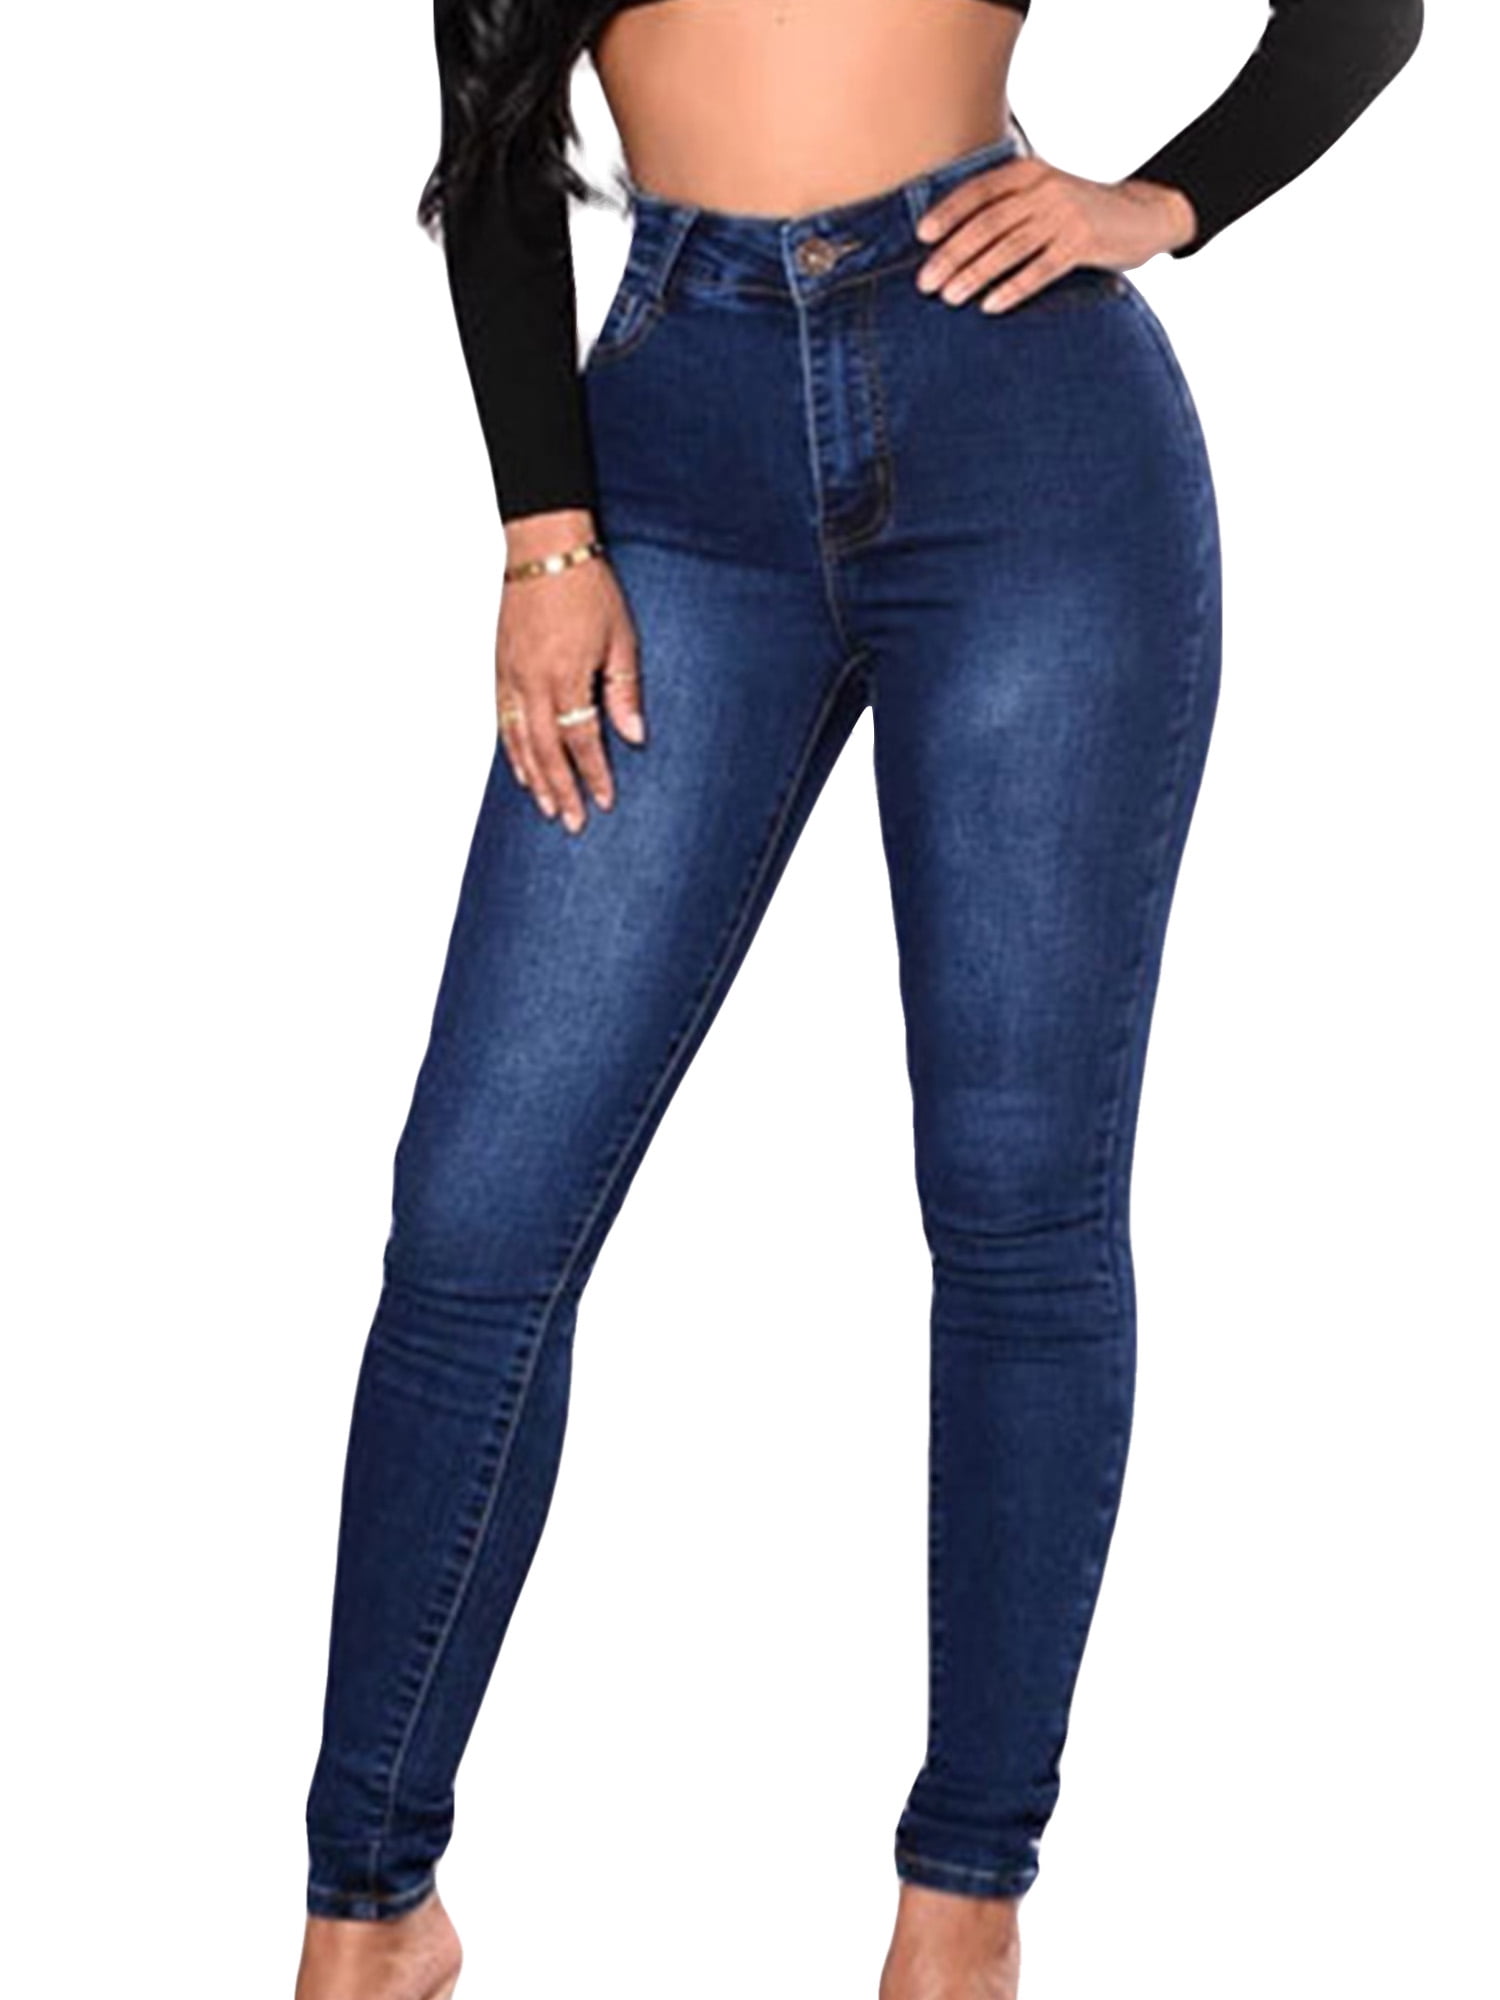 Sexy Butt Jeans For Women High Rise Curvy Shapewear Waist Denim